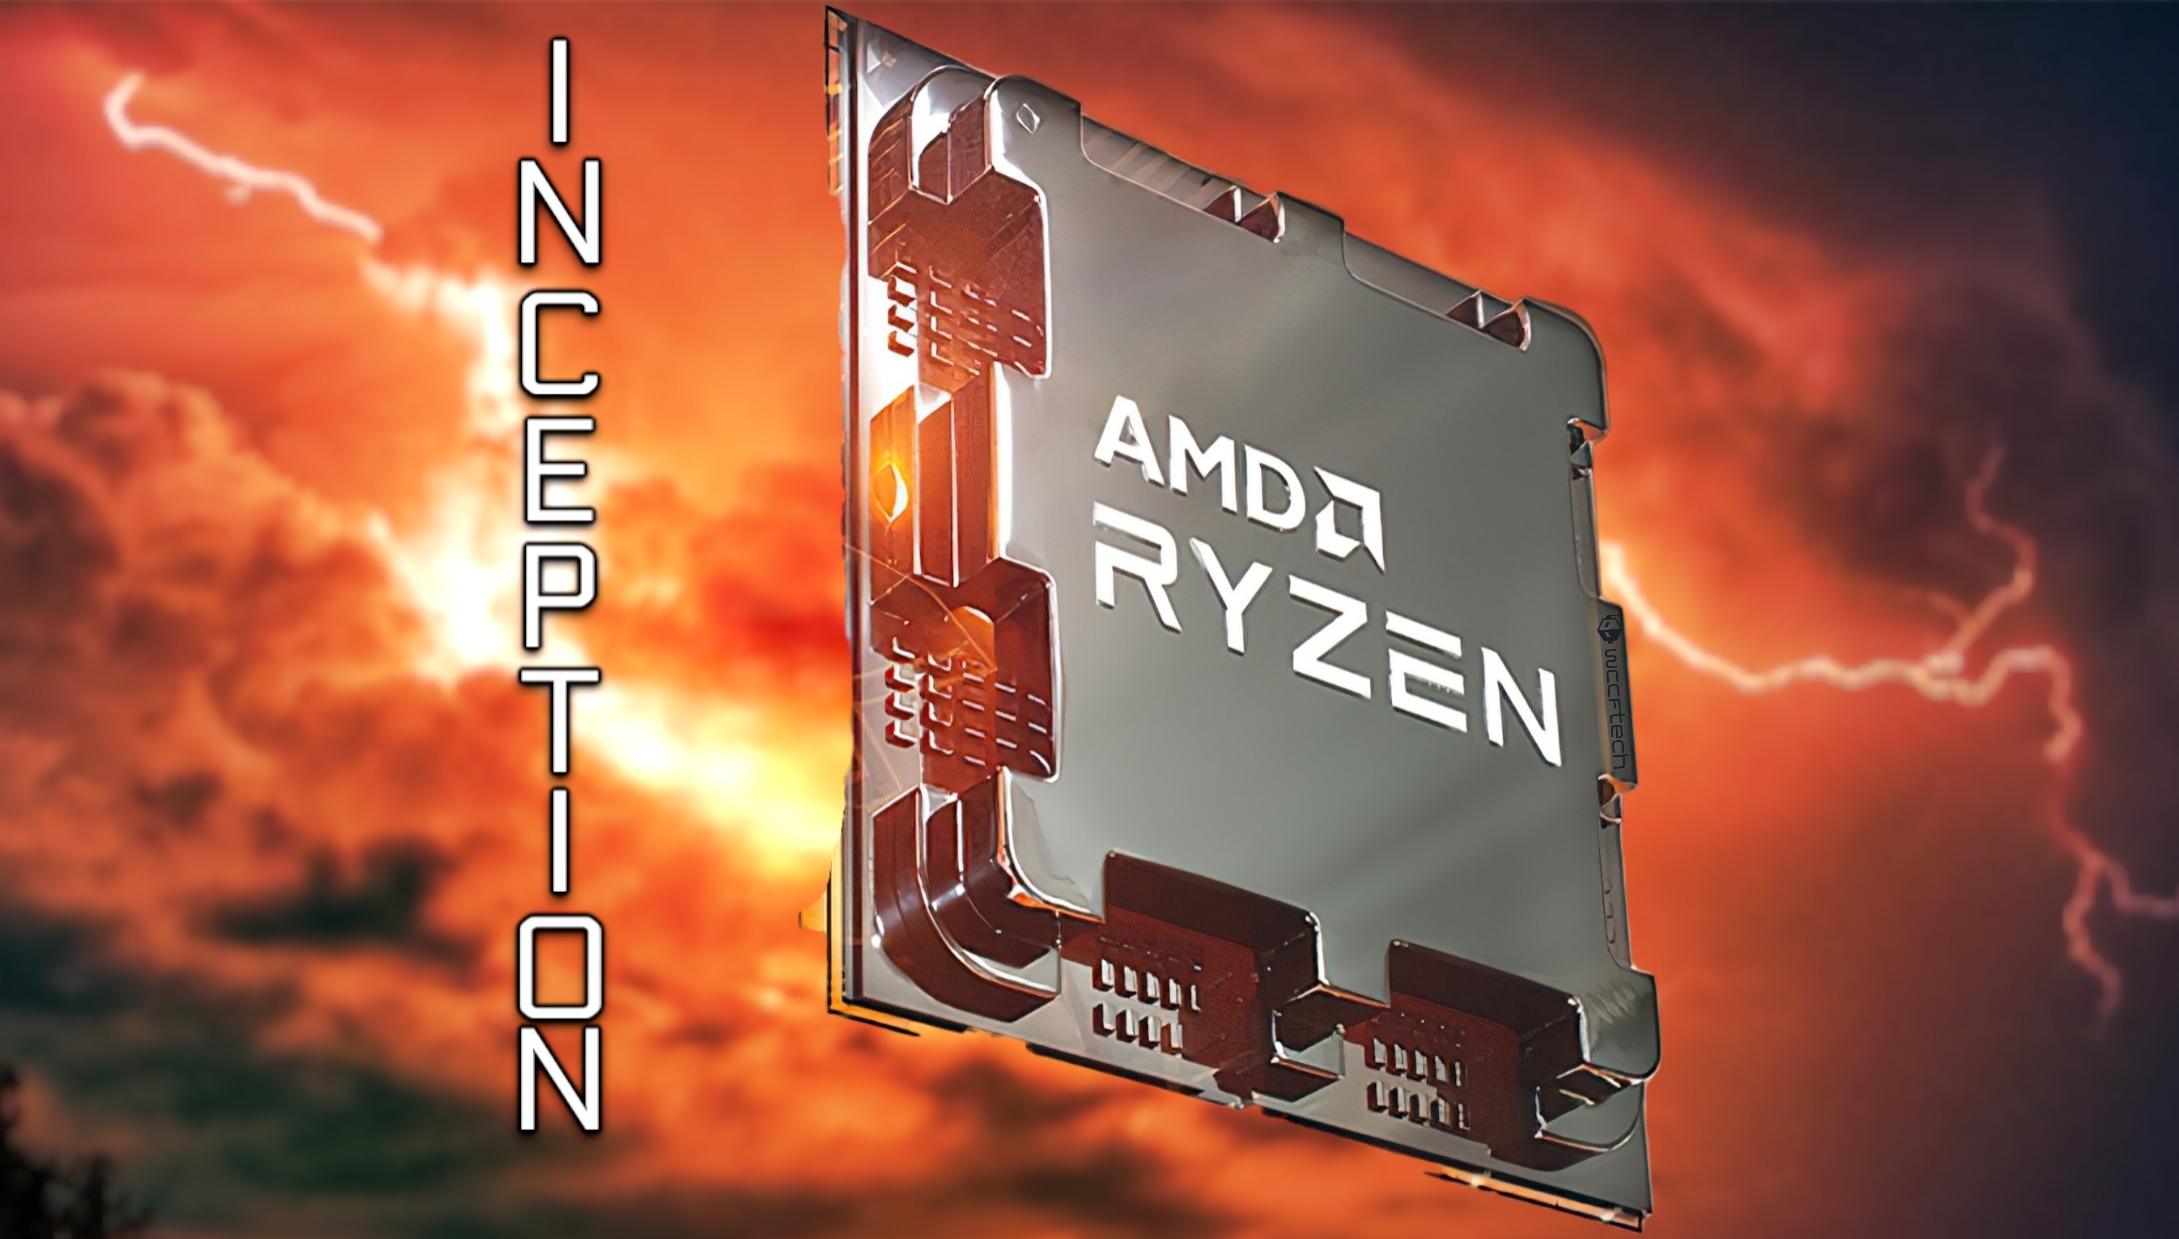 Loạt vi xử lý AMD Ryzen dính lỗ hổng bảo mật Inception cực kỳ nghiêm trọng